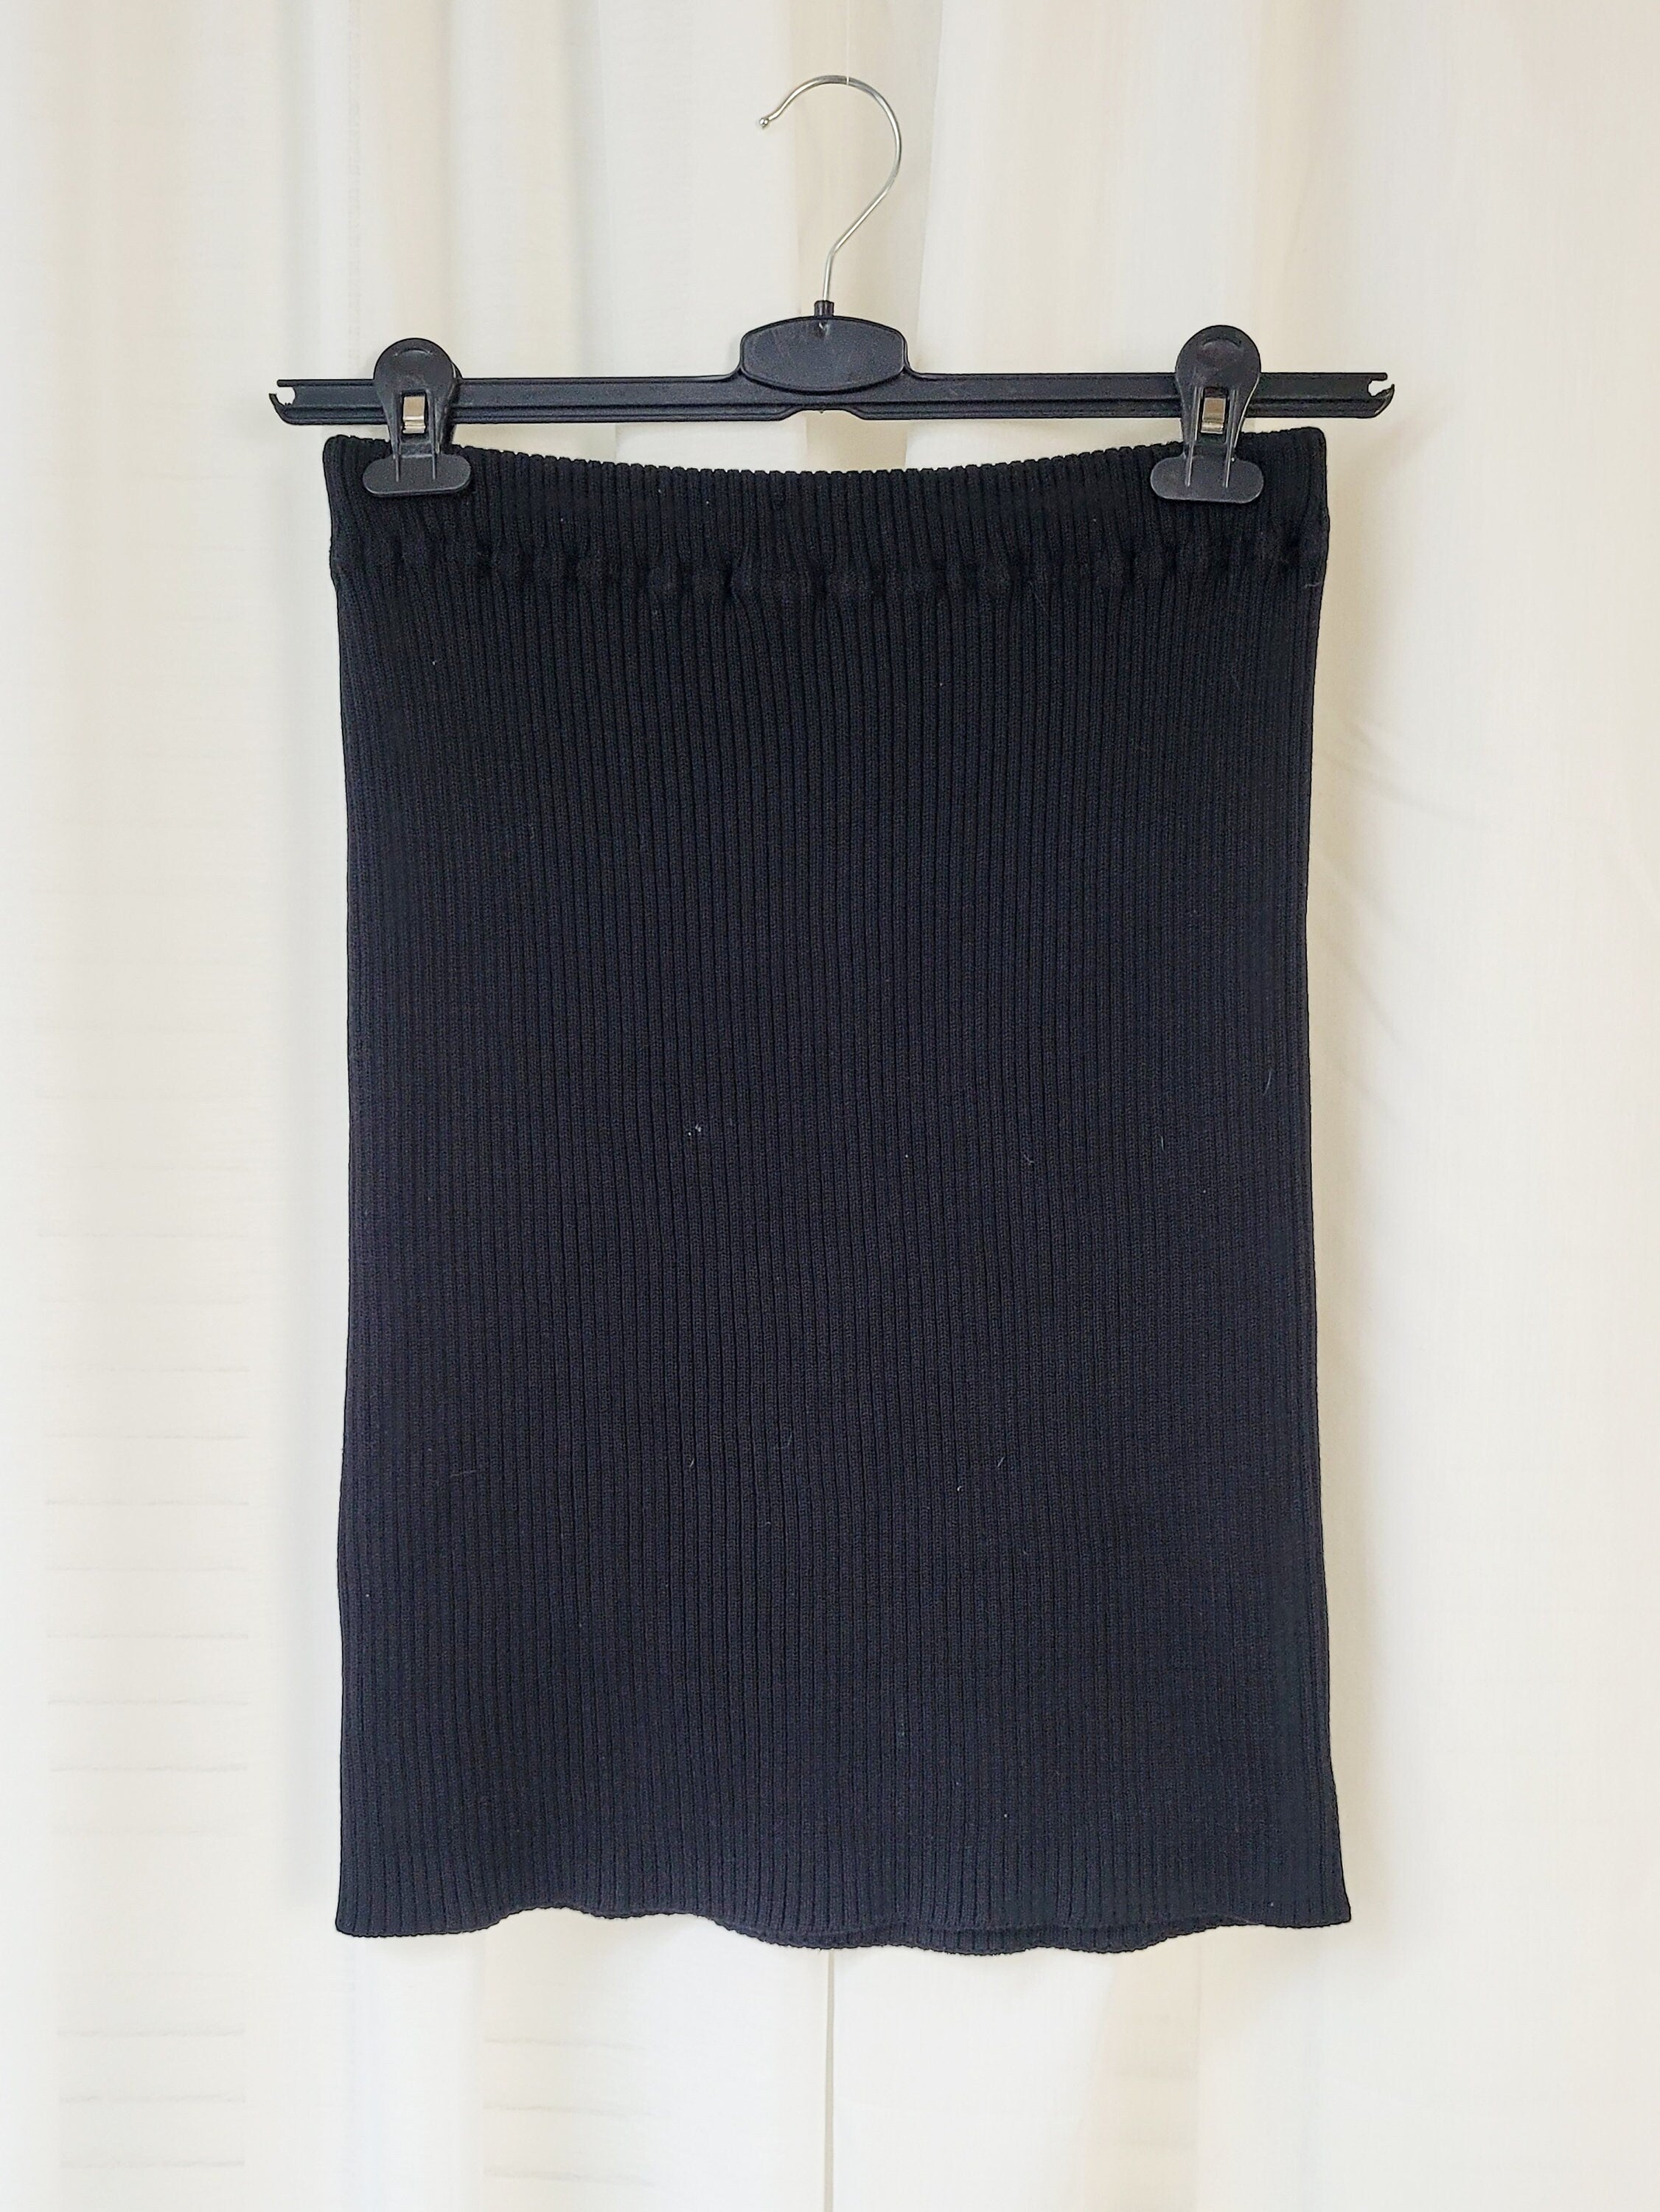 Vintage 90s black ribbed knit mini skirt